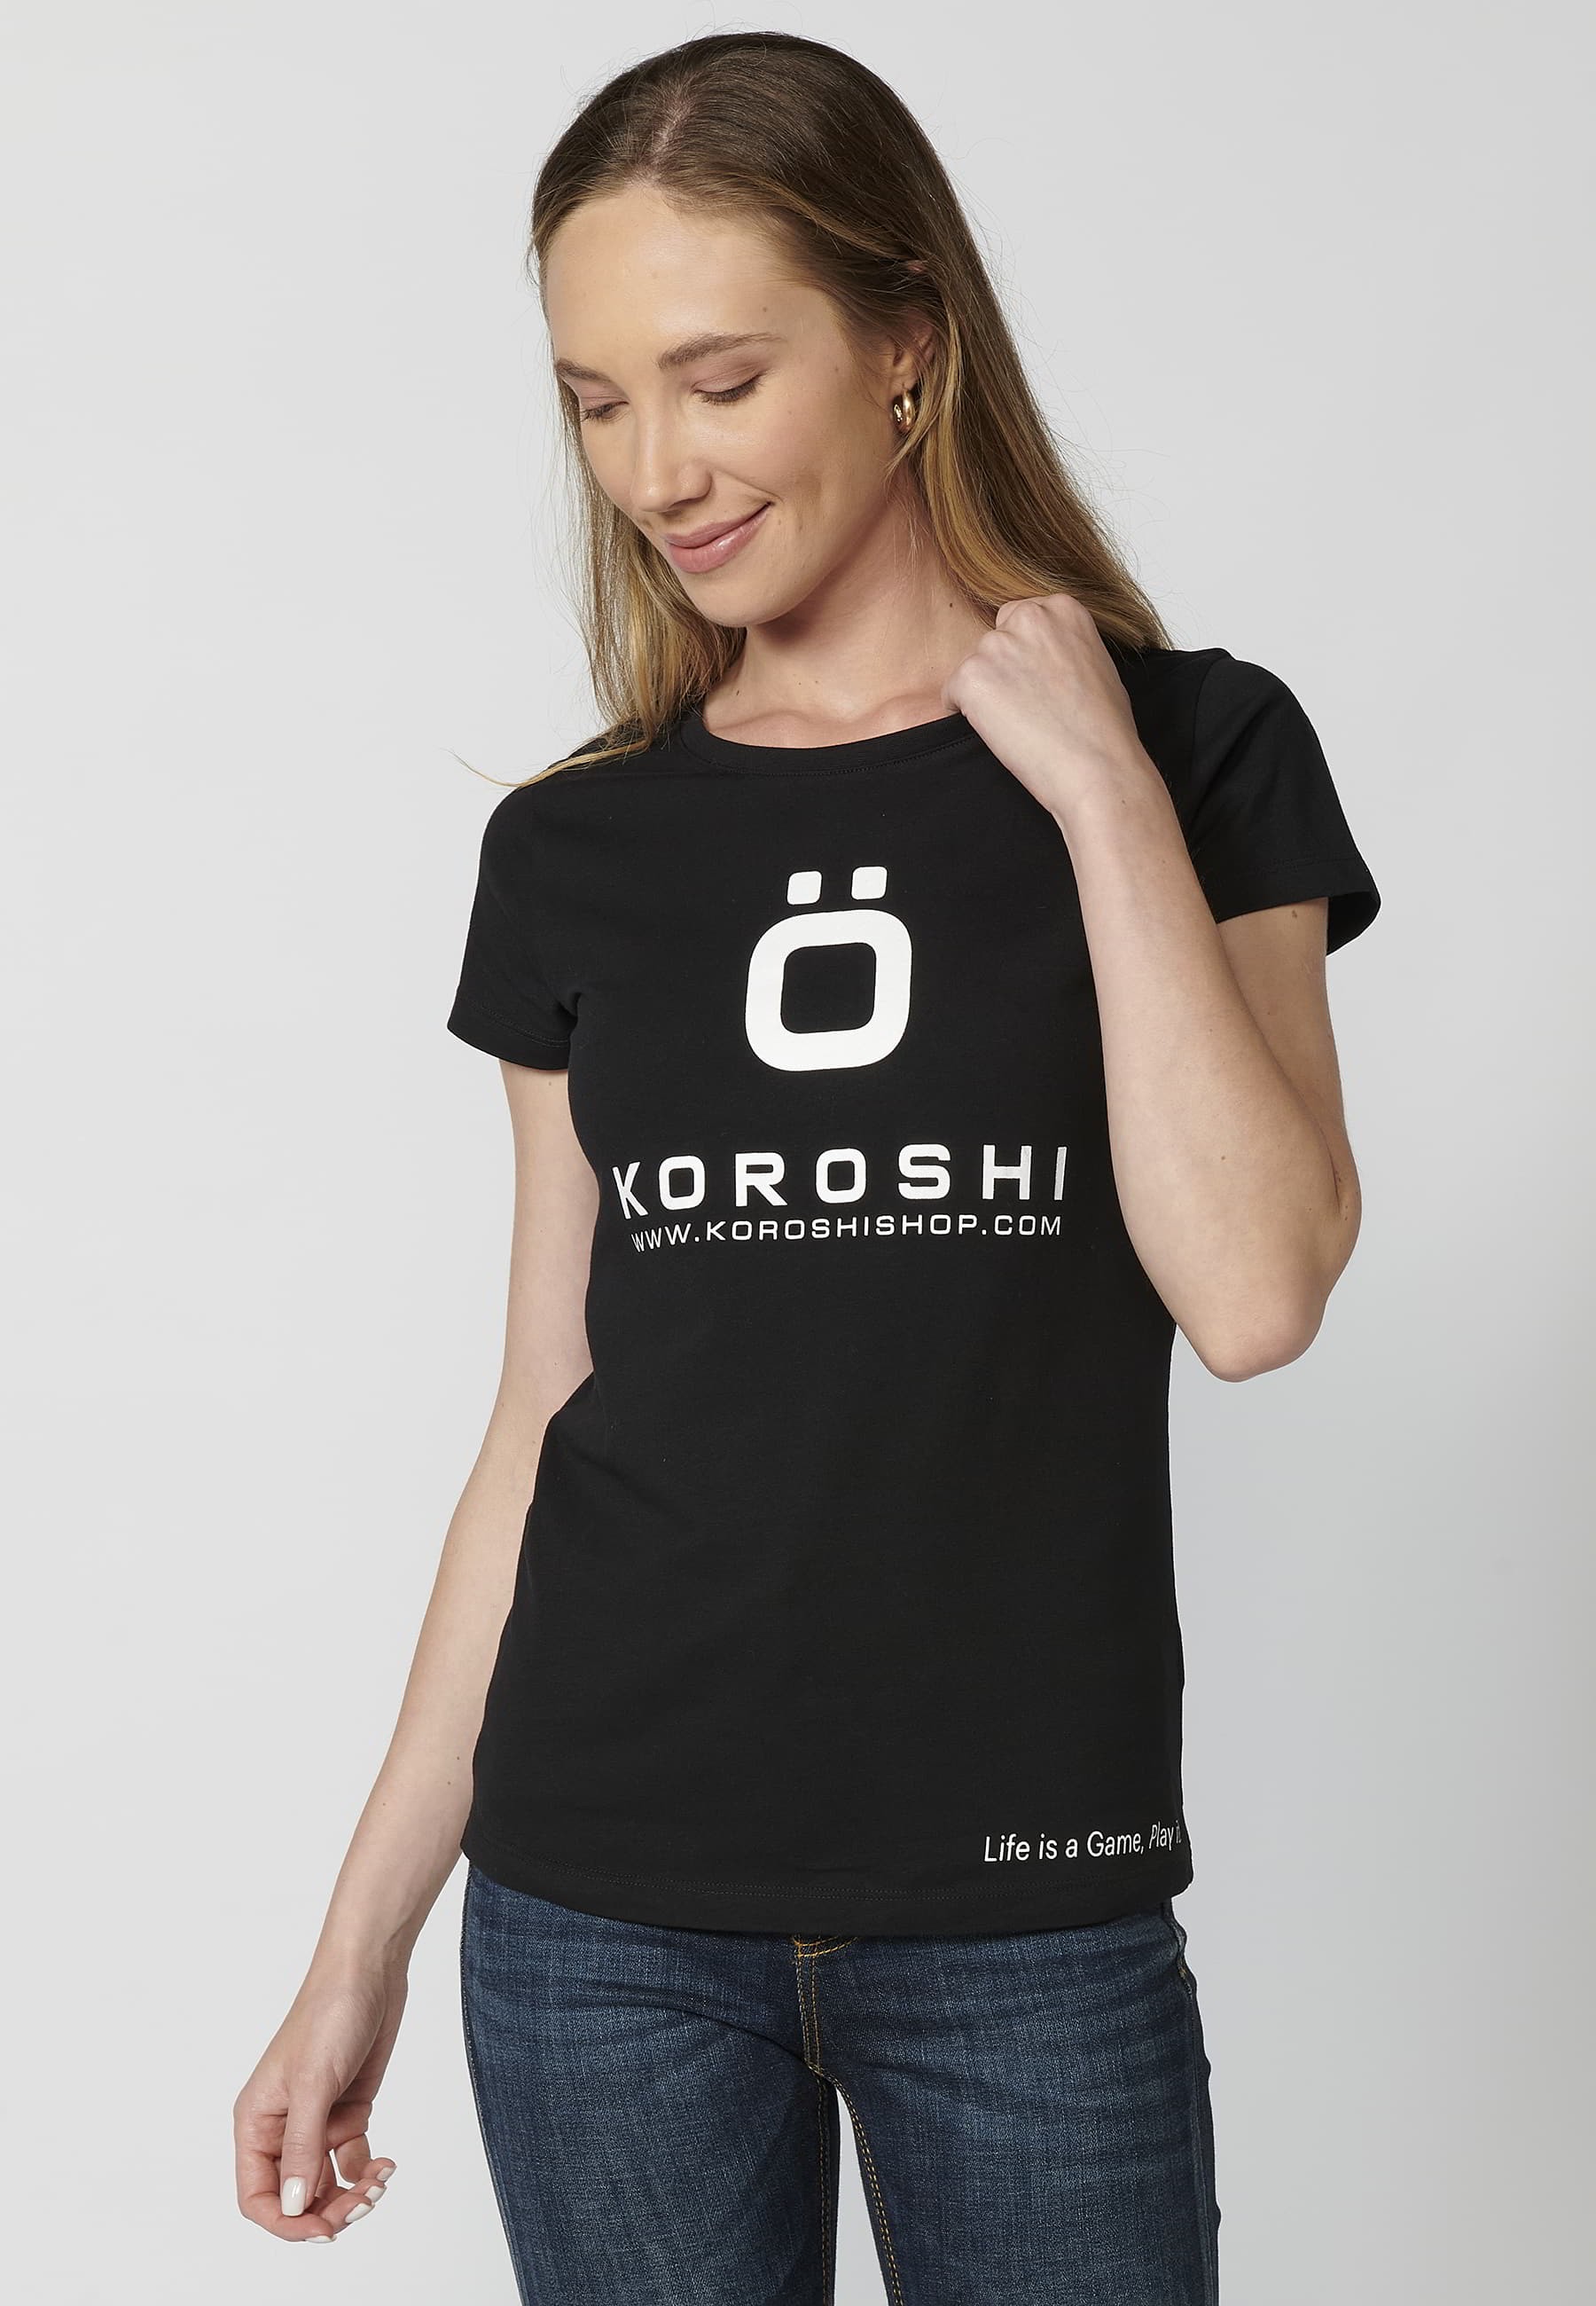 Schwarzes Kurzarm-T-Shirt aus Baumwolle mit Koroshi-Aufdruck für Damen